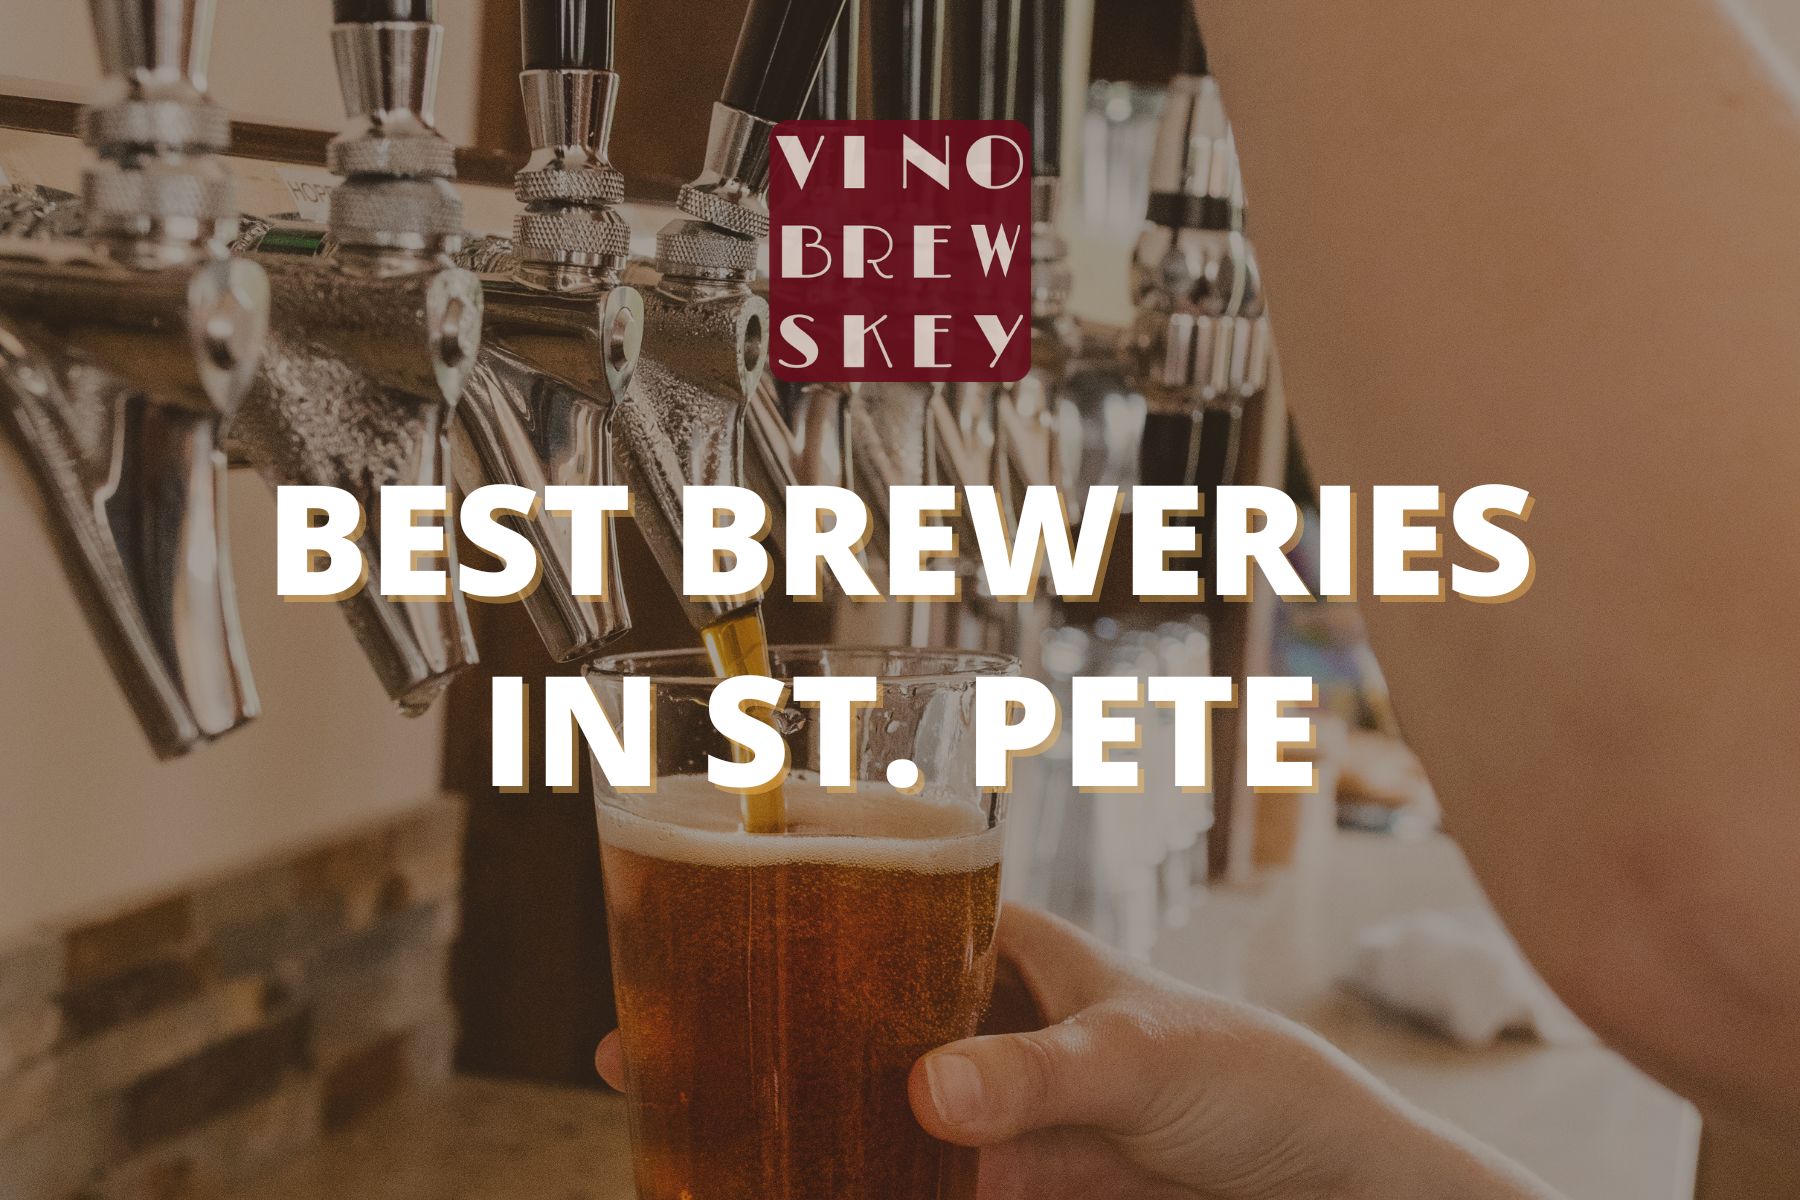 Best St. Pete, FL Breweries - VinoBrewskey